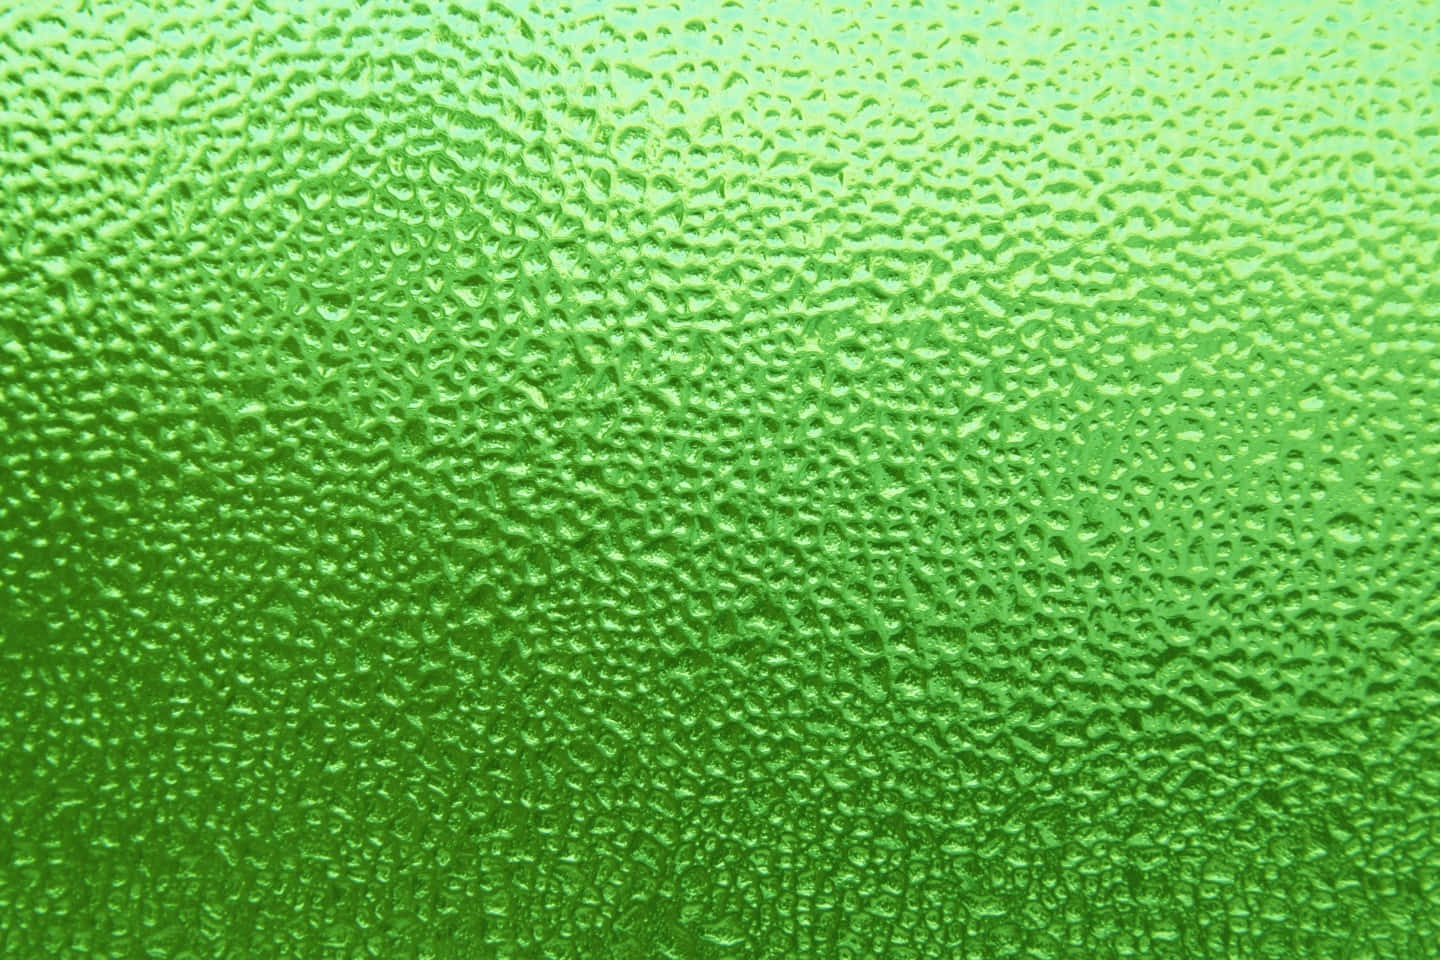 Ruggigis På Grönt Textur-bakgrund Med Inslag Av Isstrukturer På Glas!